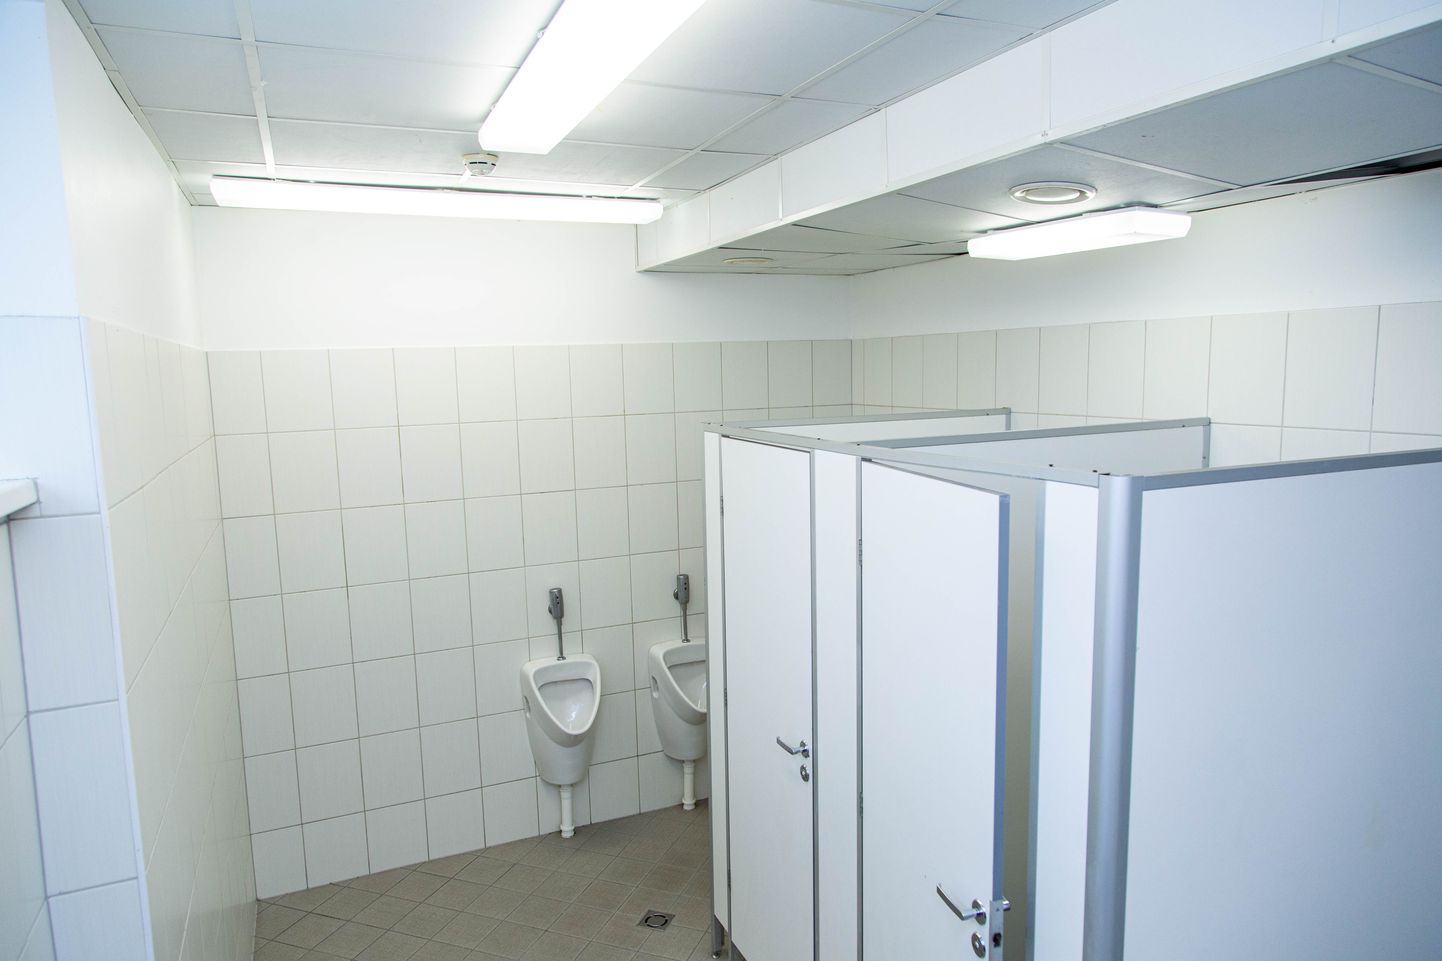 Valga põhikooli kolmanda korruse poiste WC, kus hakkas 8. veebruaril tööle suitsuandur. Põhjuseks oli poiste veipimine ehk e-sigareti popsutamine, mis käivitas õppehoone evakuatsiooni.